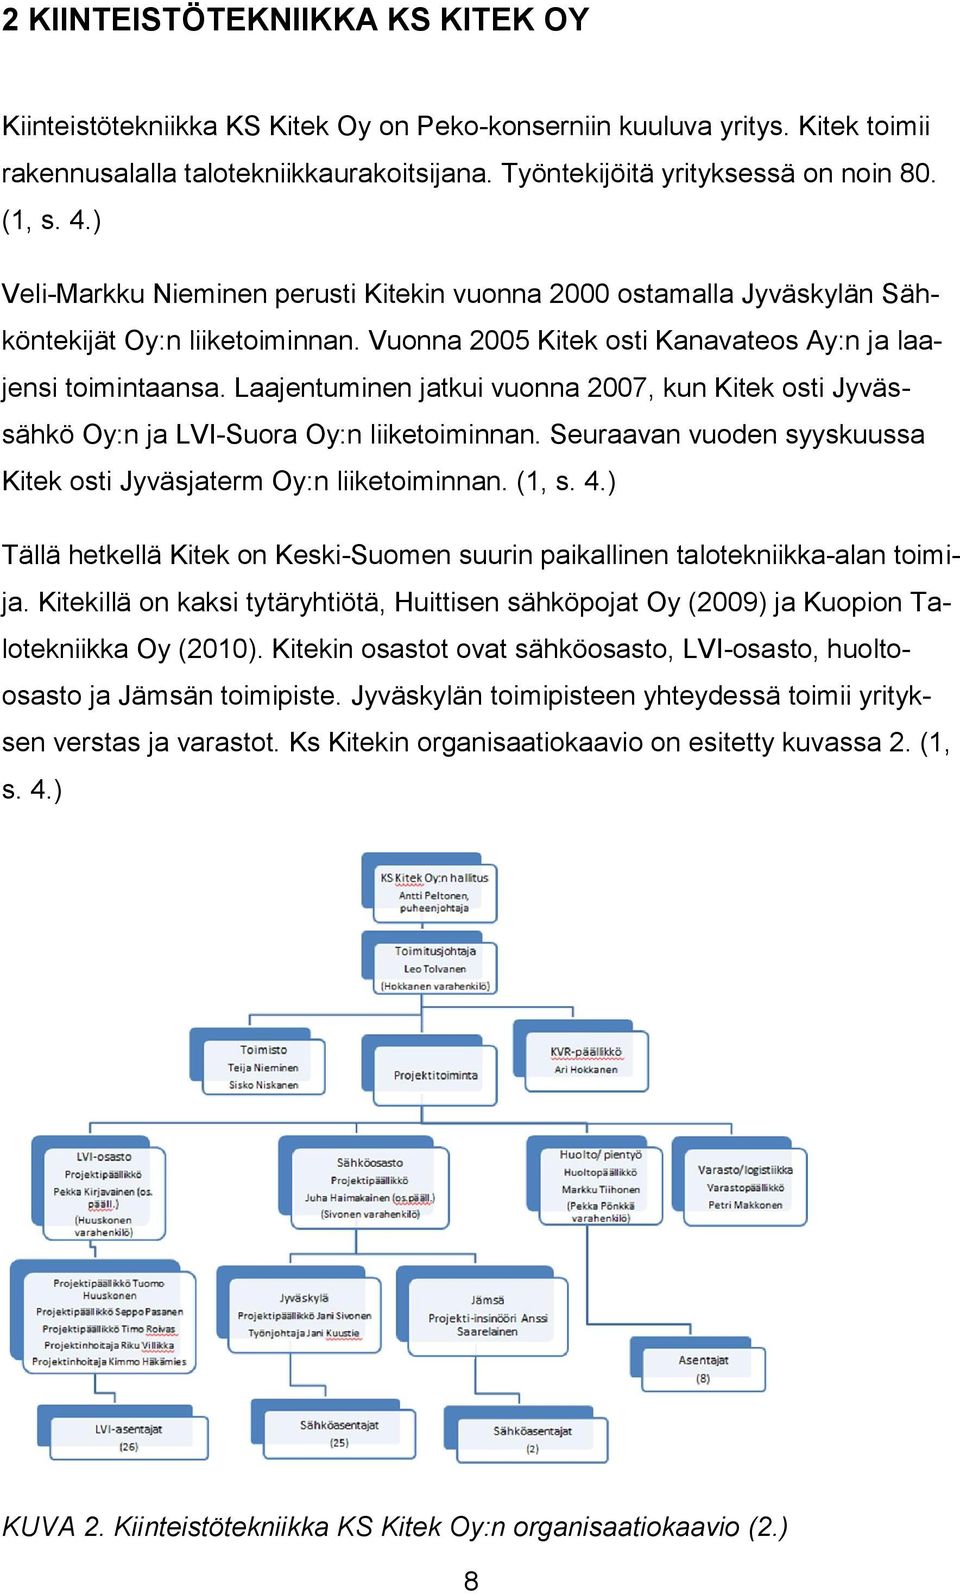 Laajentuminen jatkui vuonna 2007, kun Kitek osti Jyvässähkö Oy:n ja LVI-Suora Oy:n liiketoiminnan. Seuraavan vuoden syyskuussa Kitek osti Jyväsjaterm Oy:n liiketoiminnan. (1, s. 4.